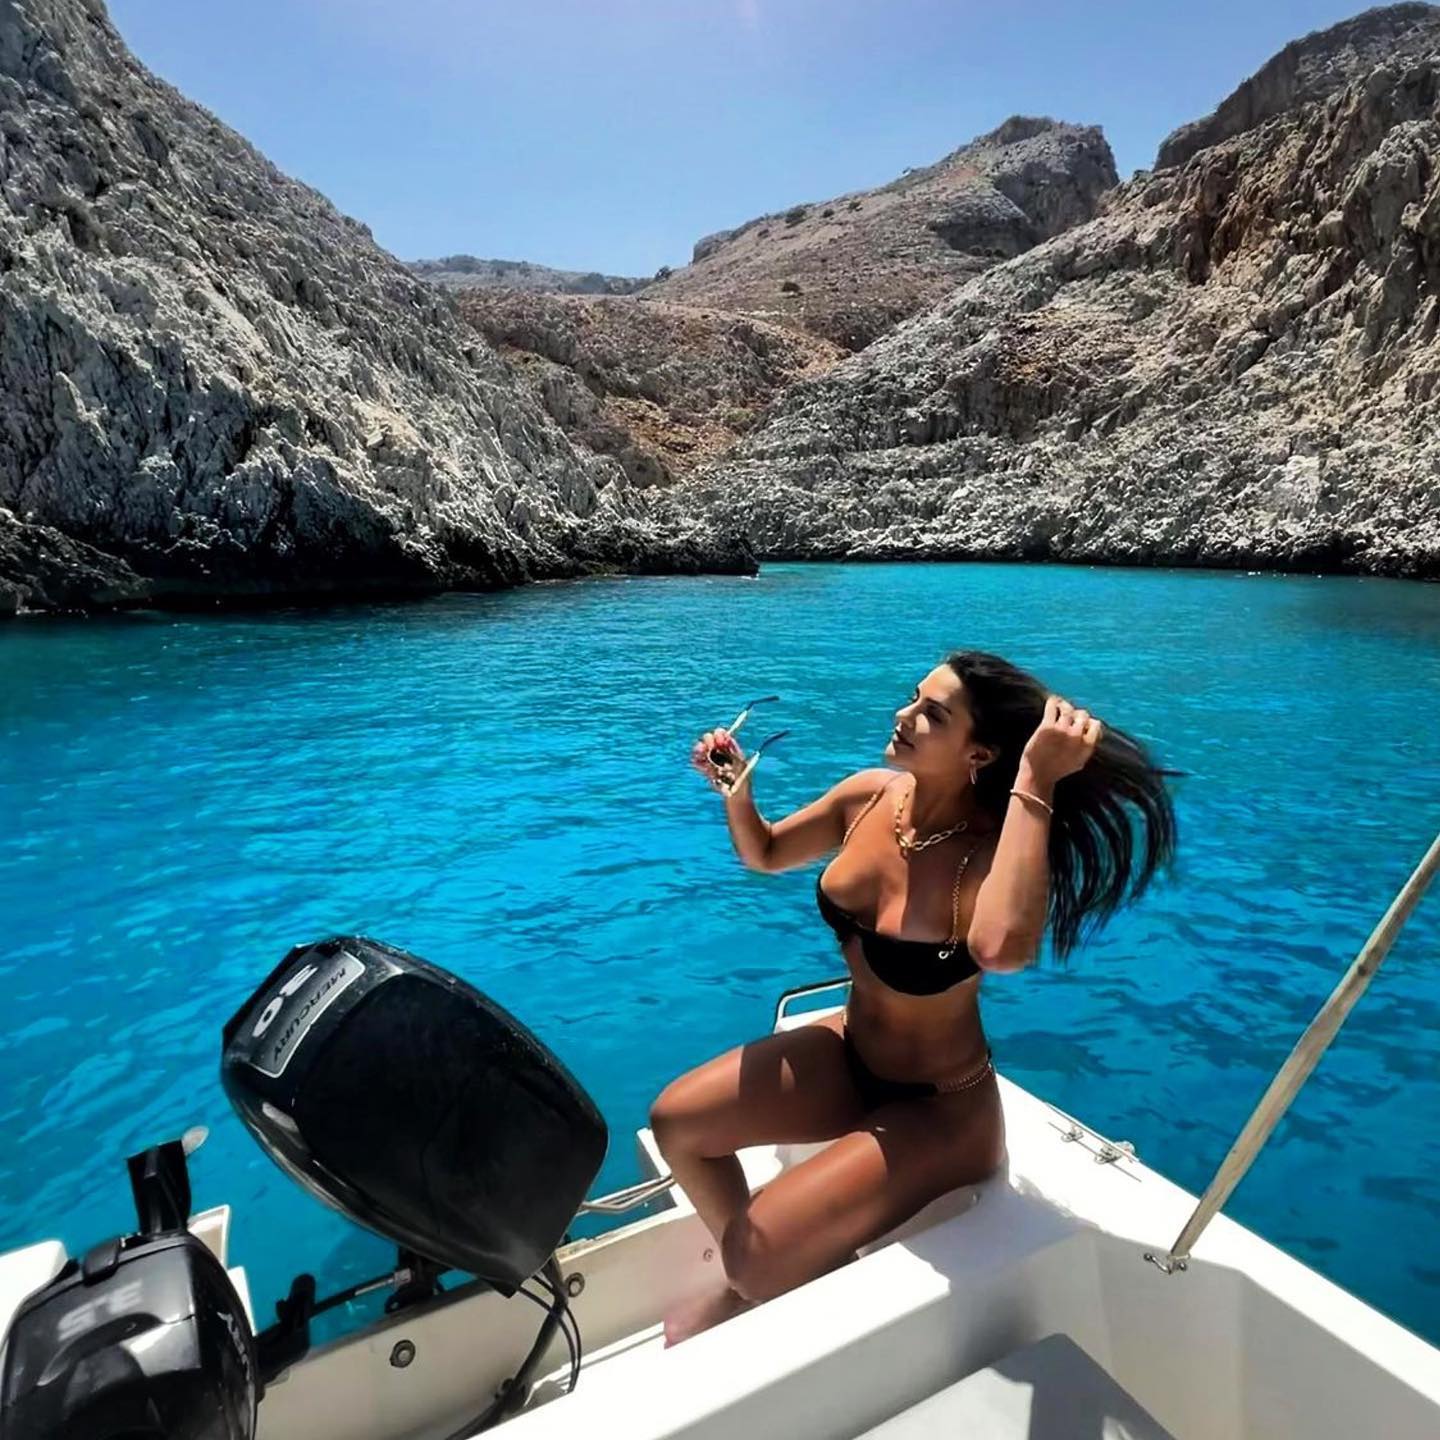 Rent a Boat in Crete